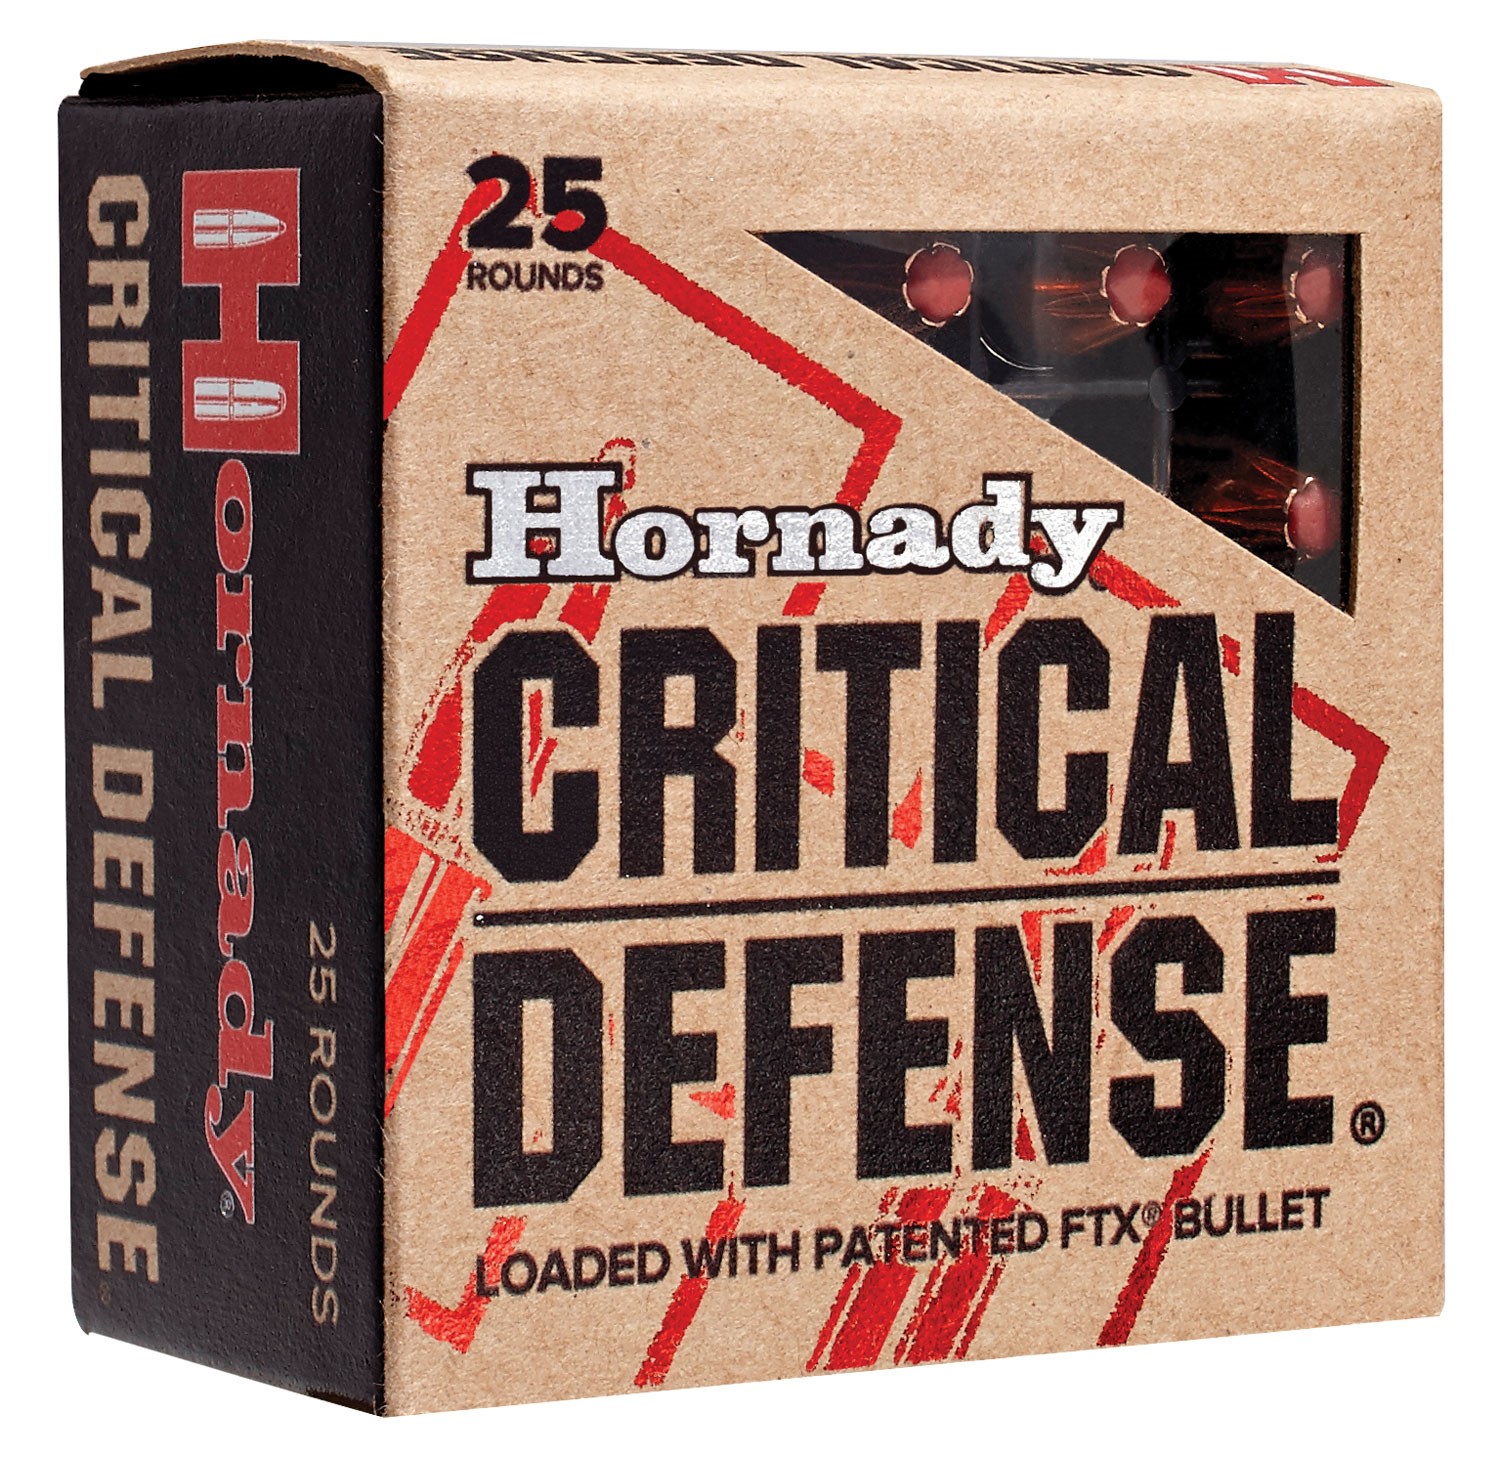 HORNADY CRITICAL DEFENSE 44SW 165GR FLEX, 20RDS